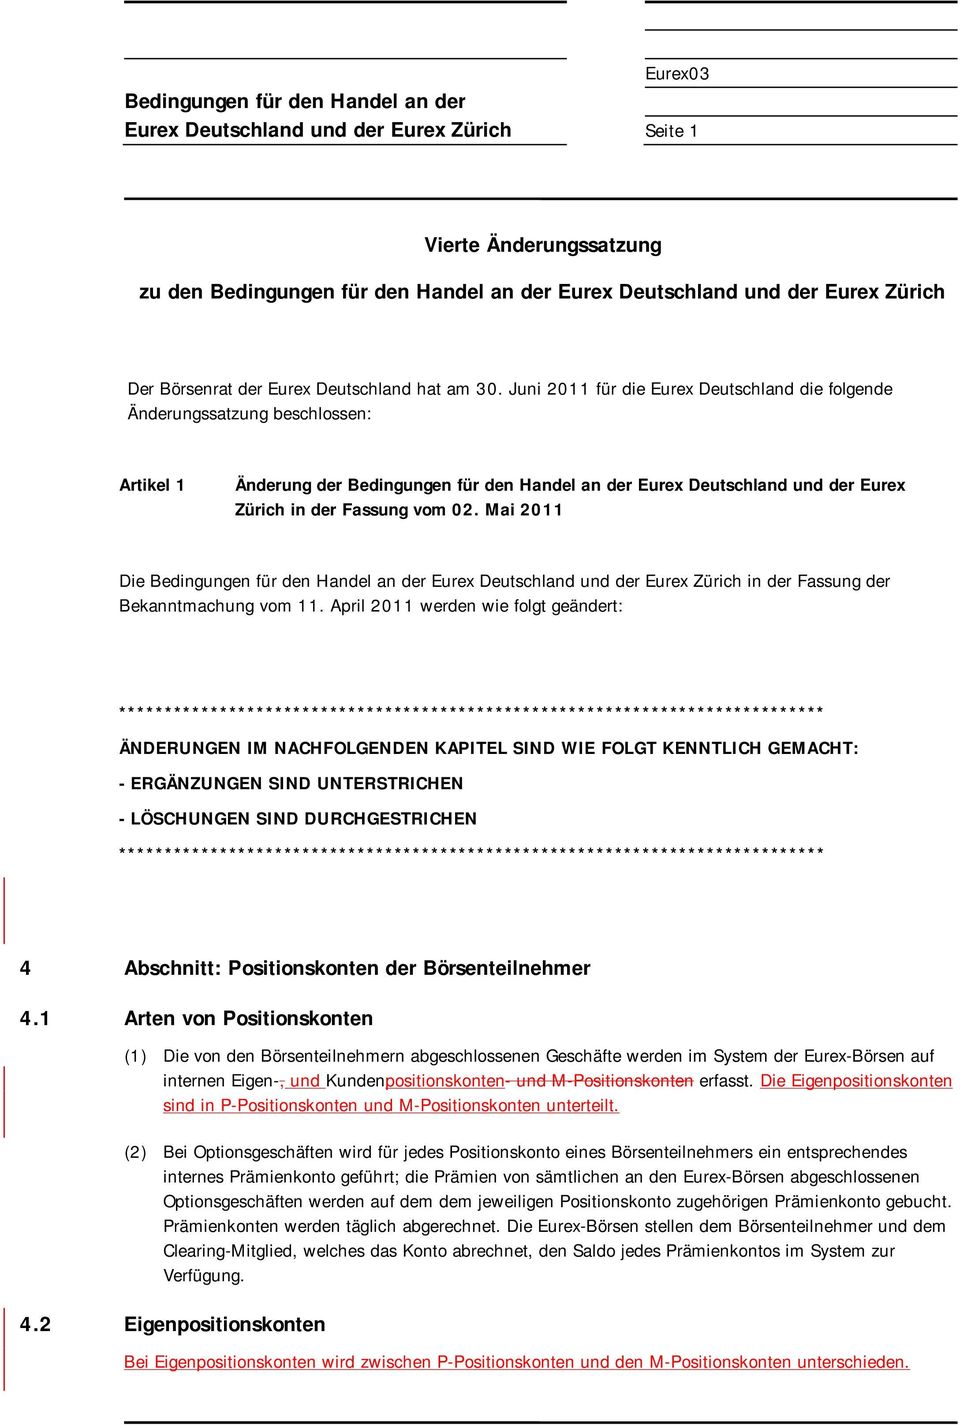 Mai 2011 Die Eurex Deutschland und der Eurex Zürich in der Fassung der Bekanntmachung vom 11.